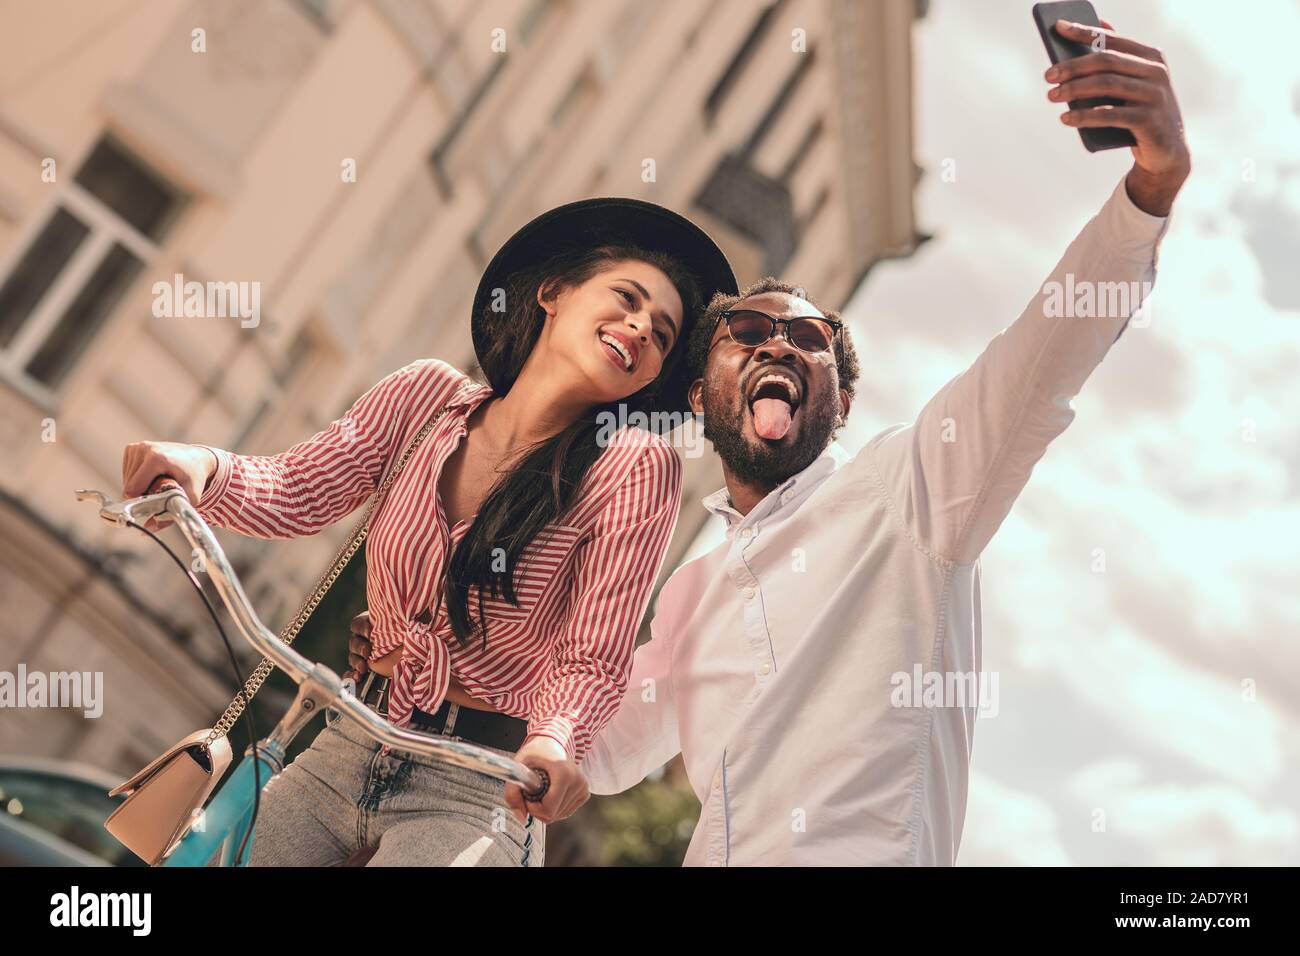 Montrant langue pour funny photo stock selfies Banque D'Images